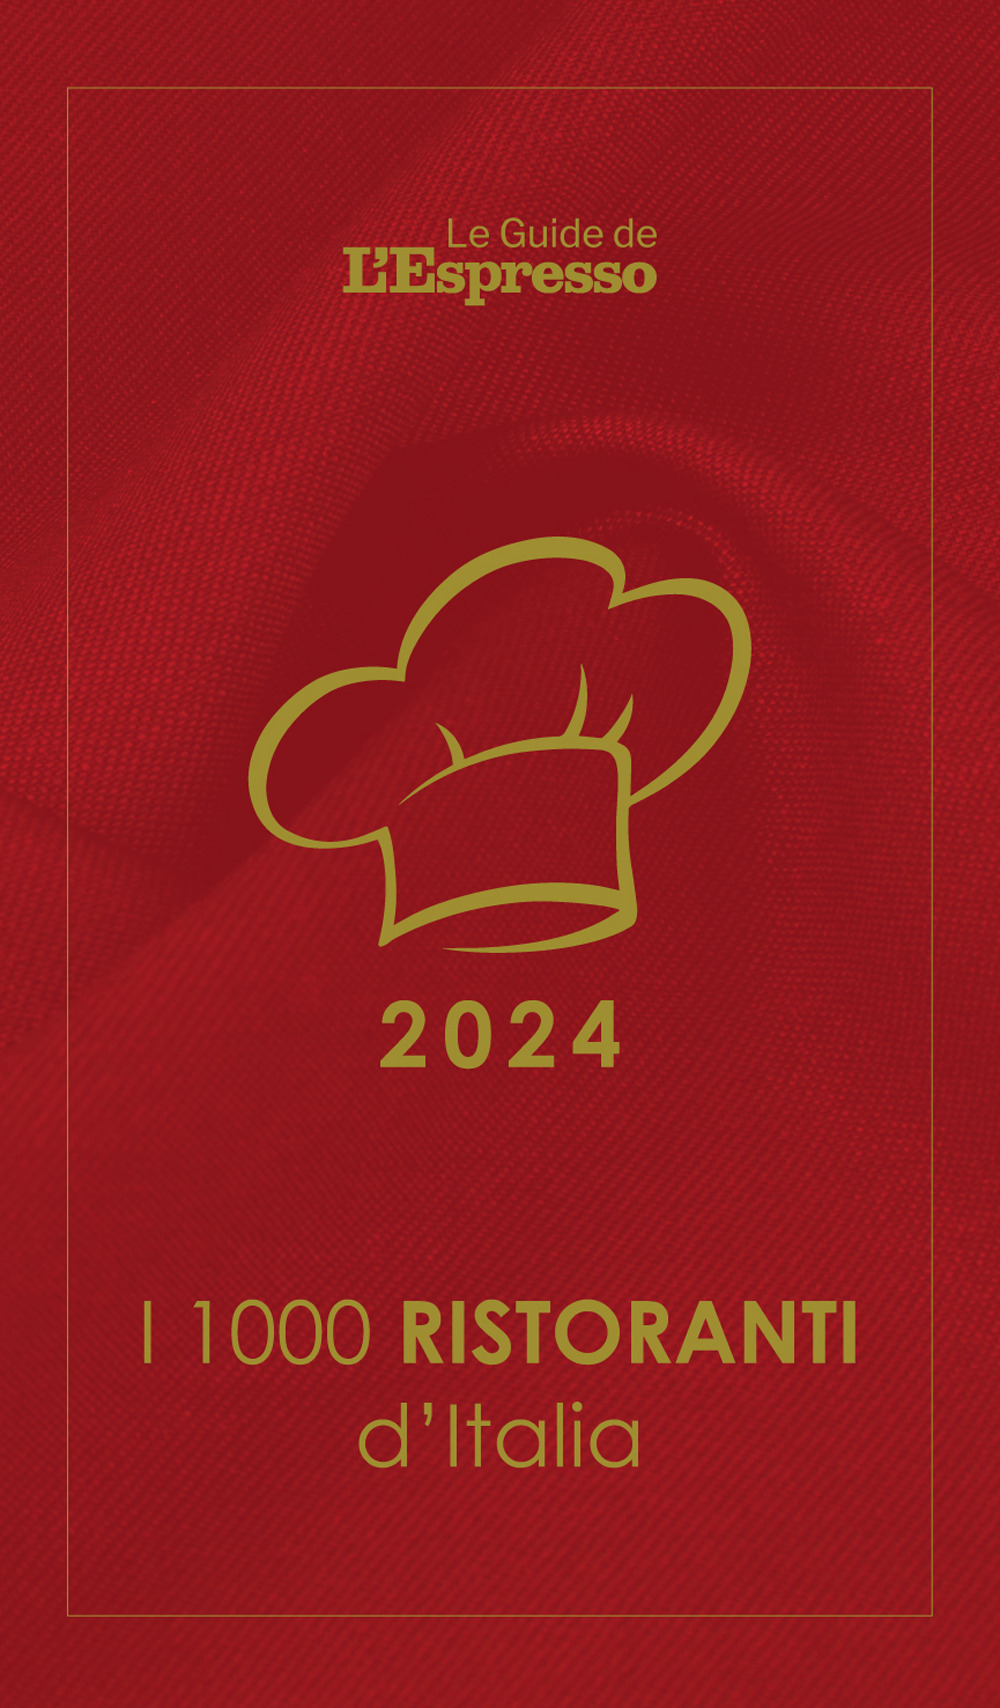 Libri Andrea Grignaffini - I 1000 Ristoranti D'italia 2024. Le Guide De L'espresso NUOVO SIGILLATO, EDIZIONE DEL 08/12/2023 SUBITO DISPONIBILE